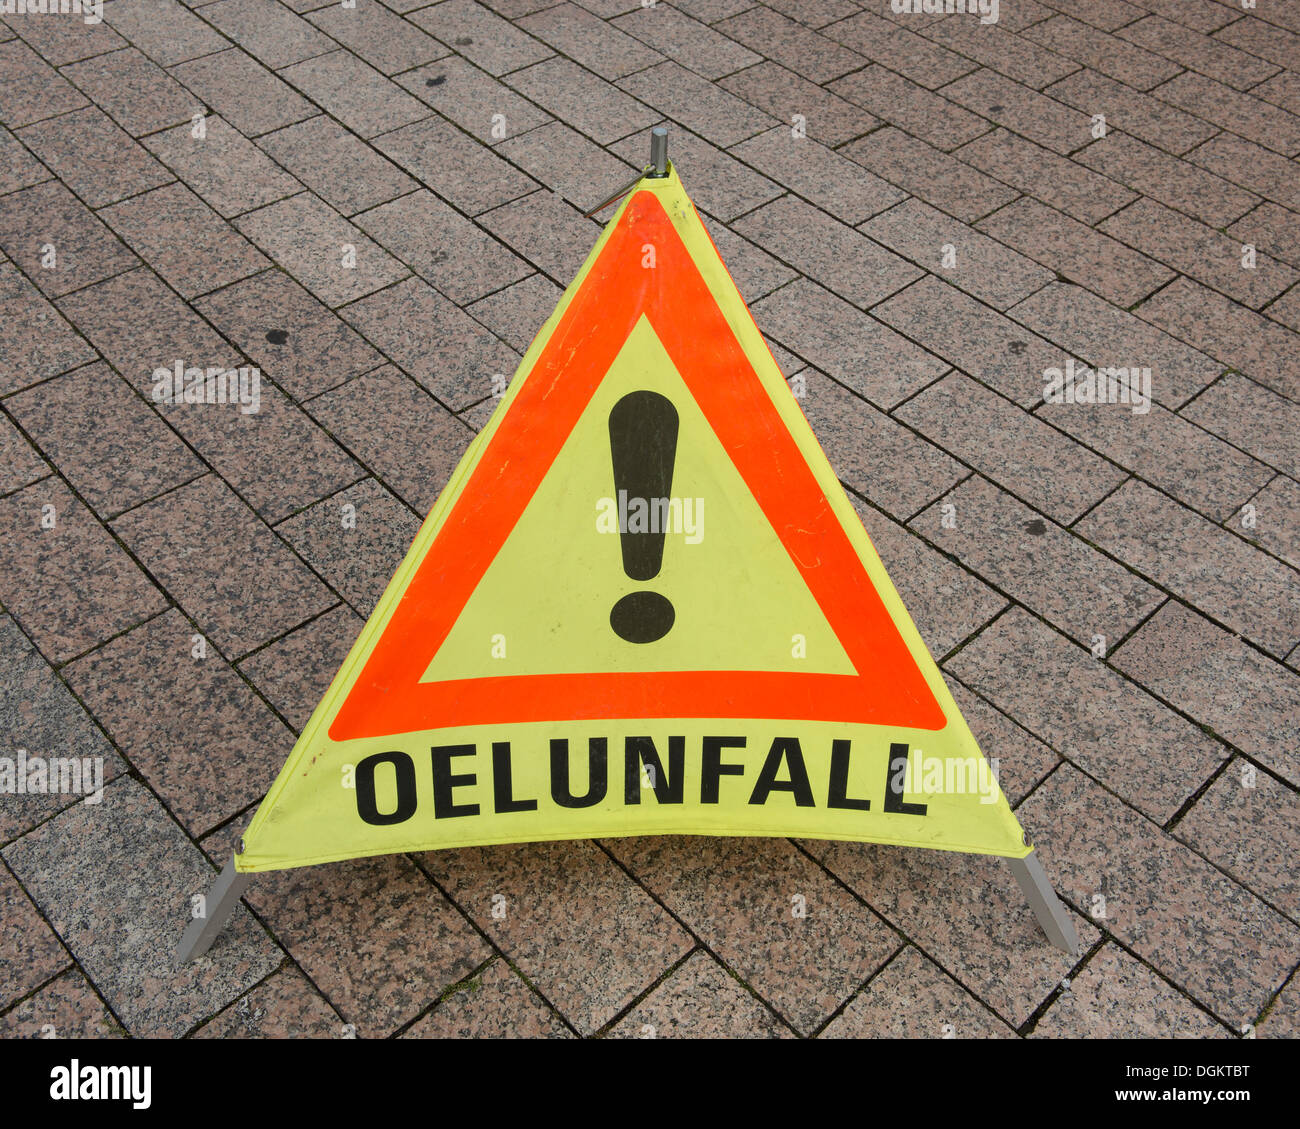 Dreieck, Dreieck, mit Bezug auf "Oelunfall", Deutsch für Ölpest Falten Stockfoto